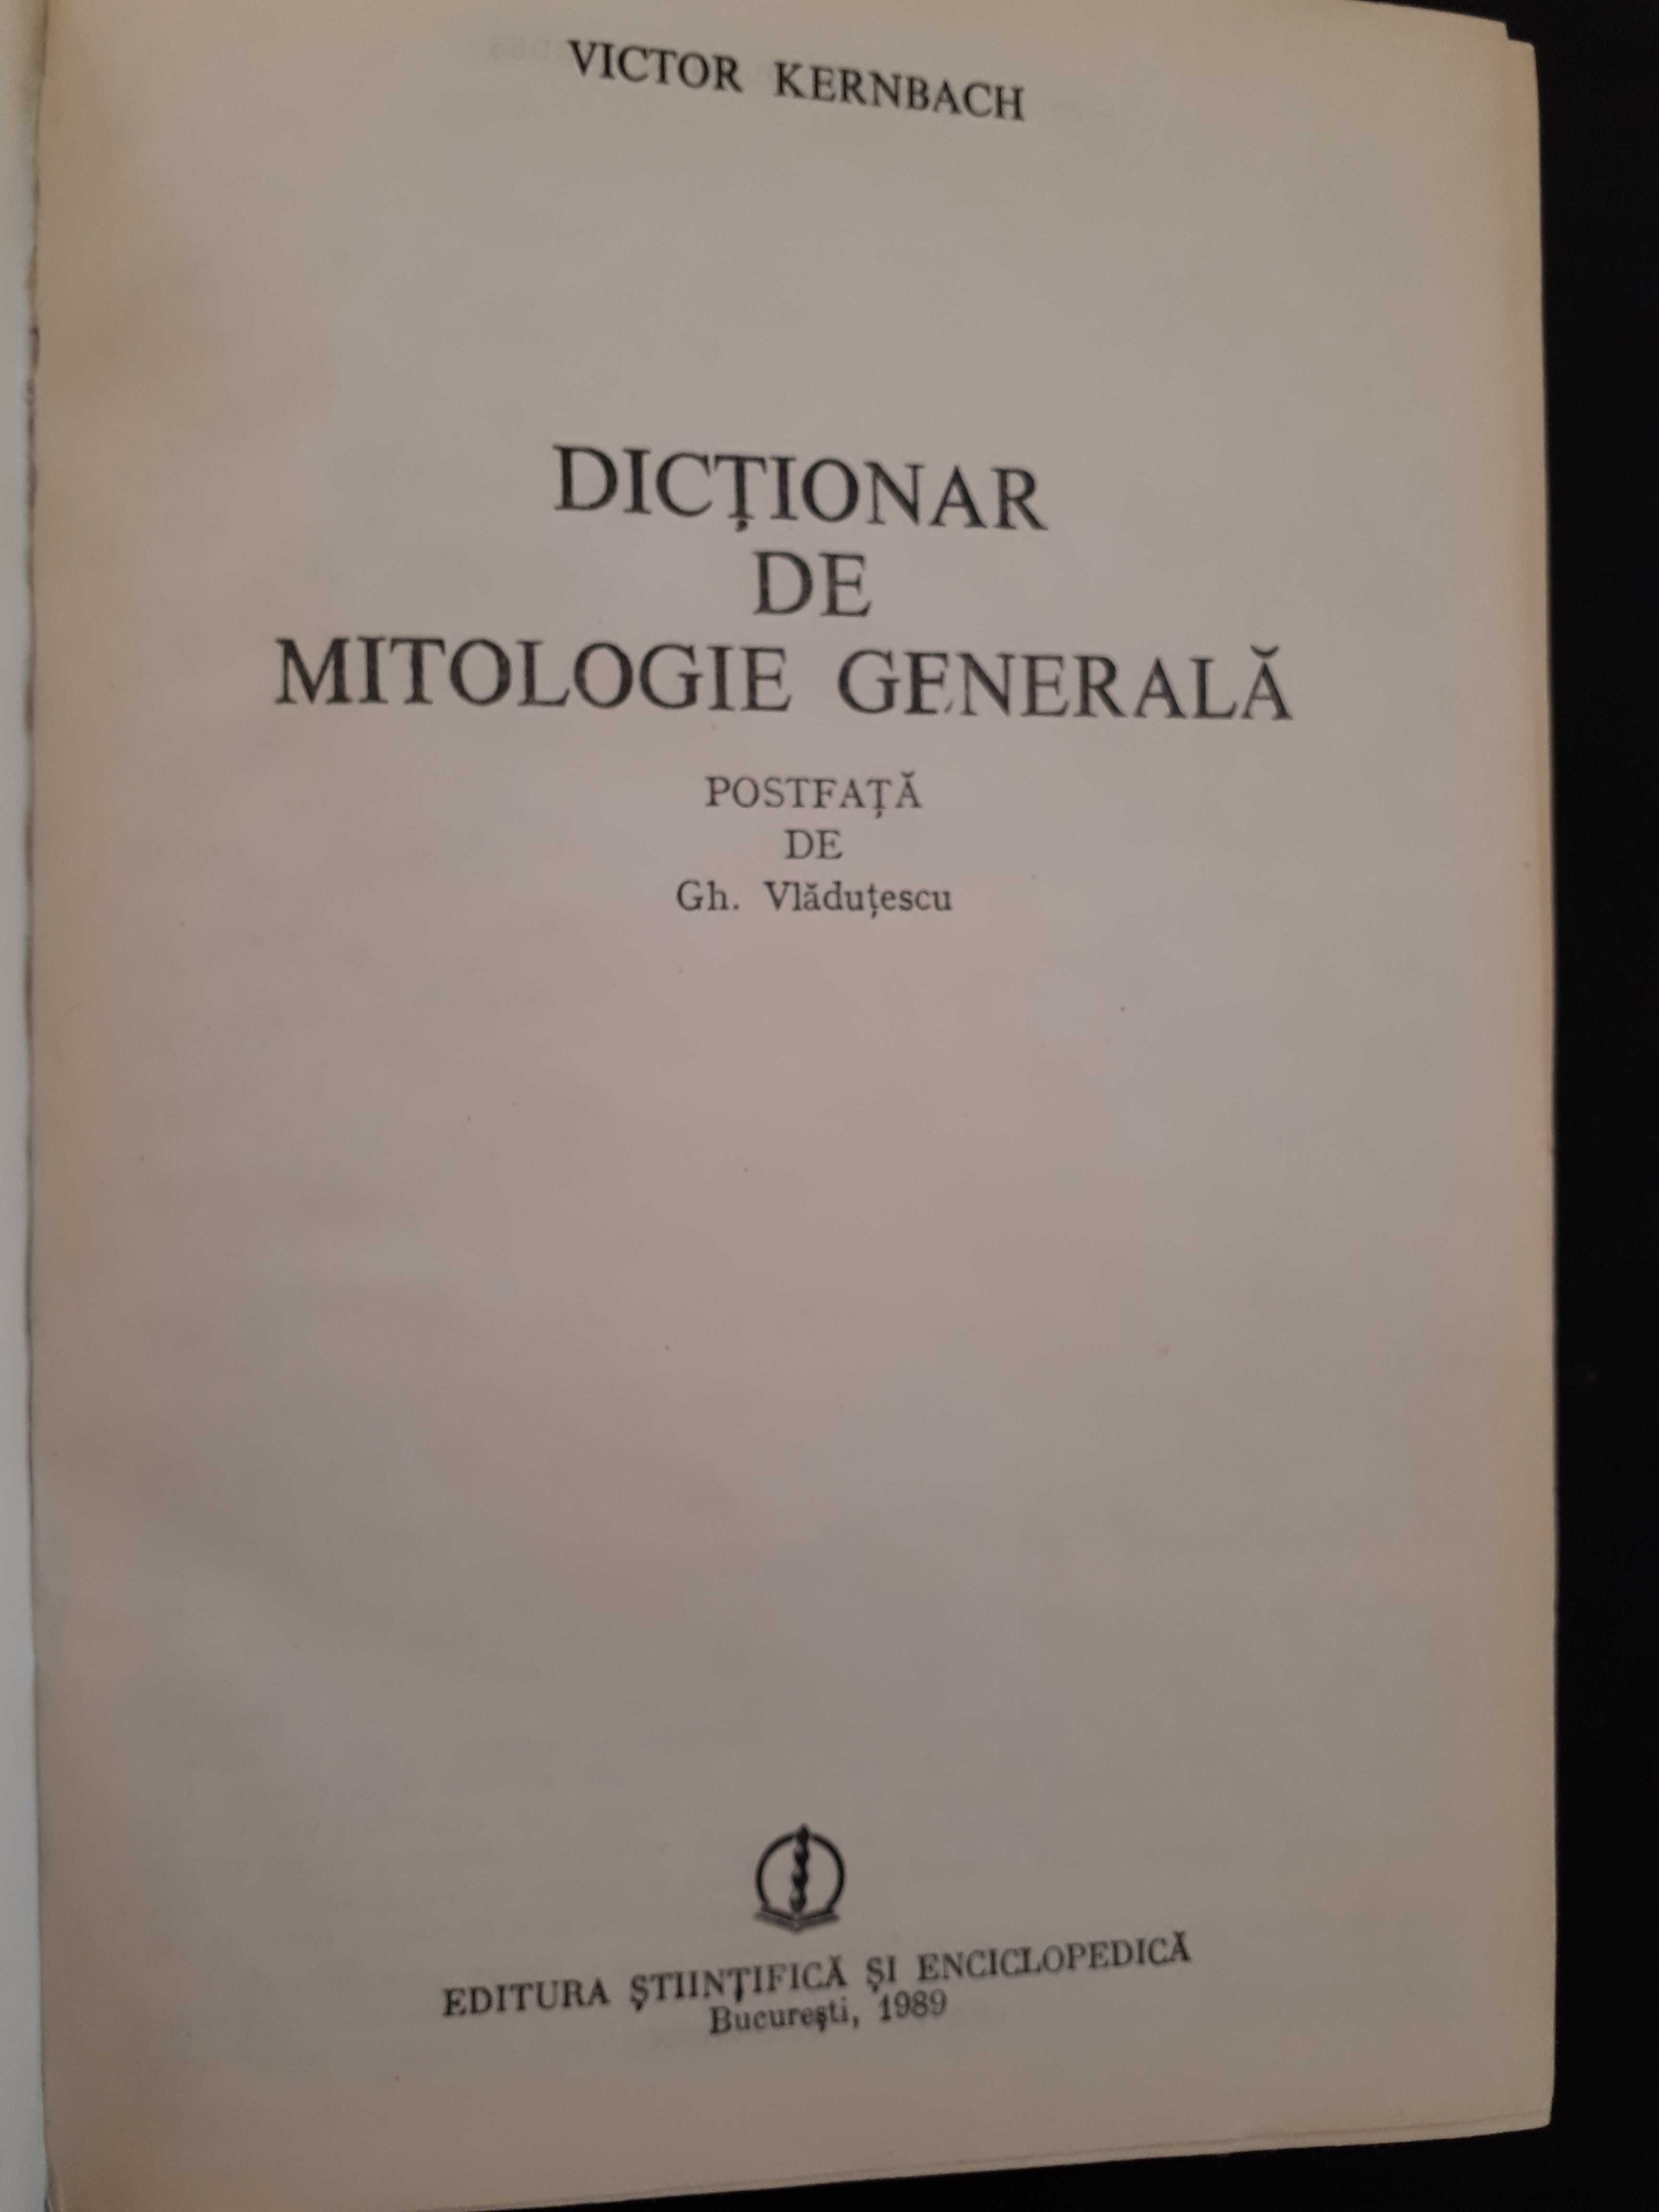 Dictionar de mitologie generala, Victor Kernbach